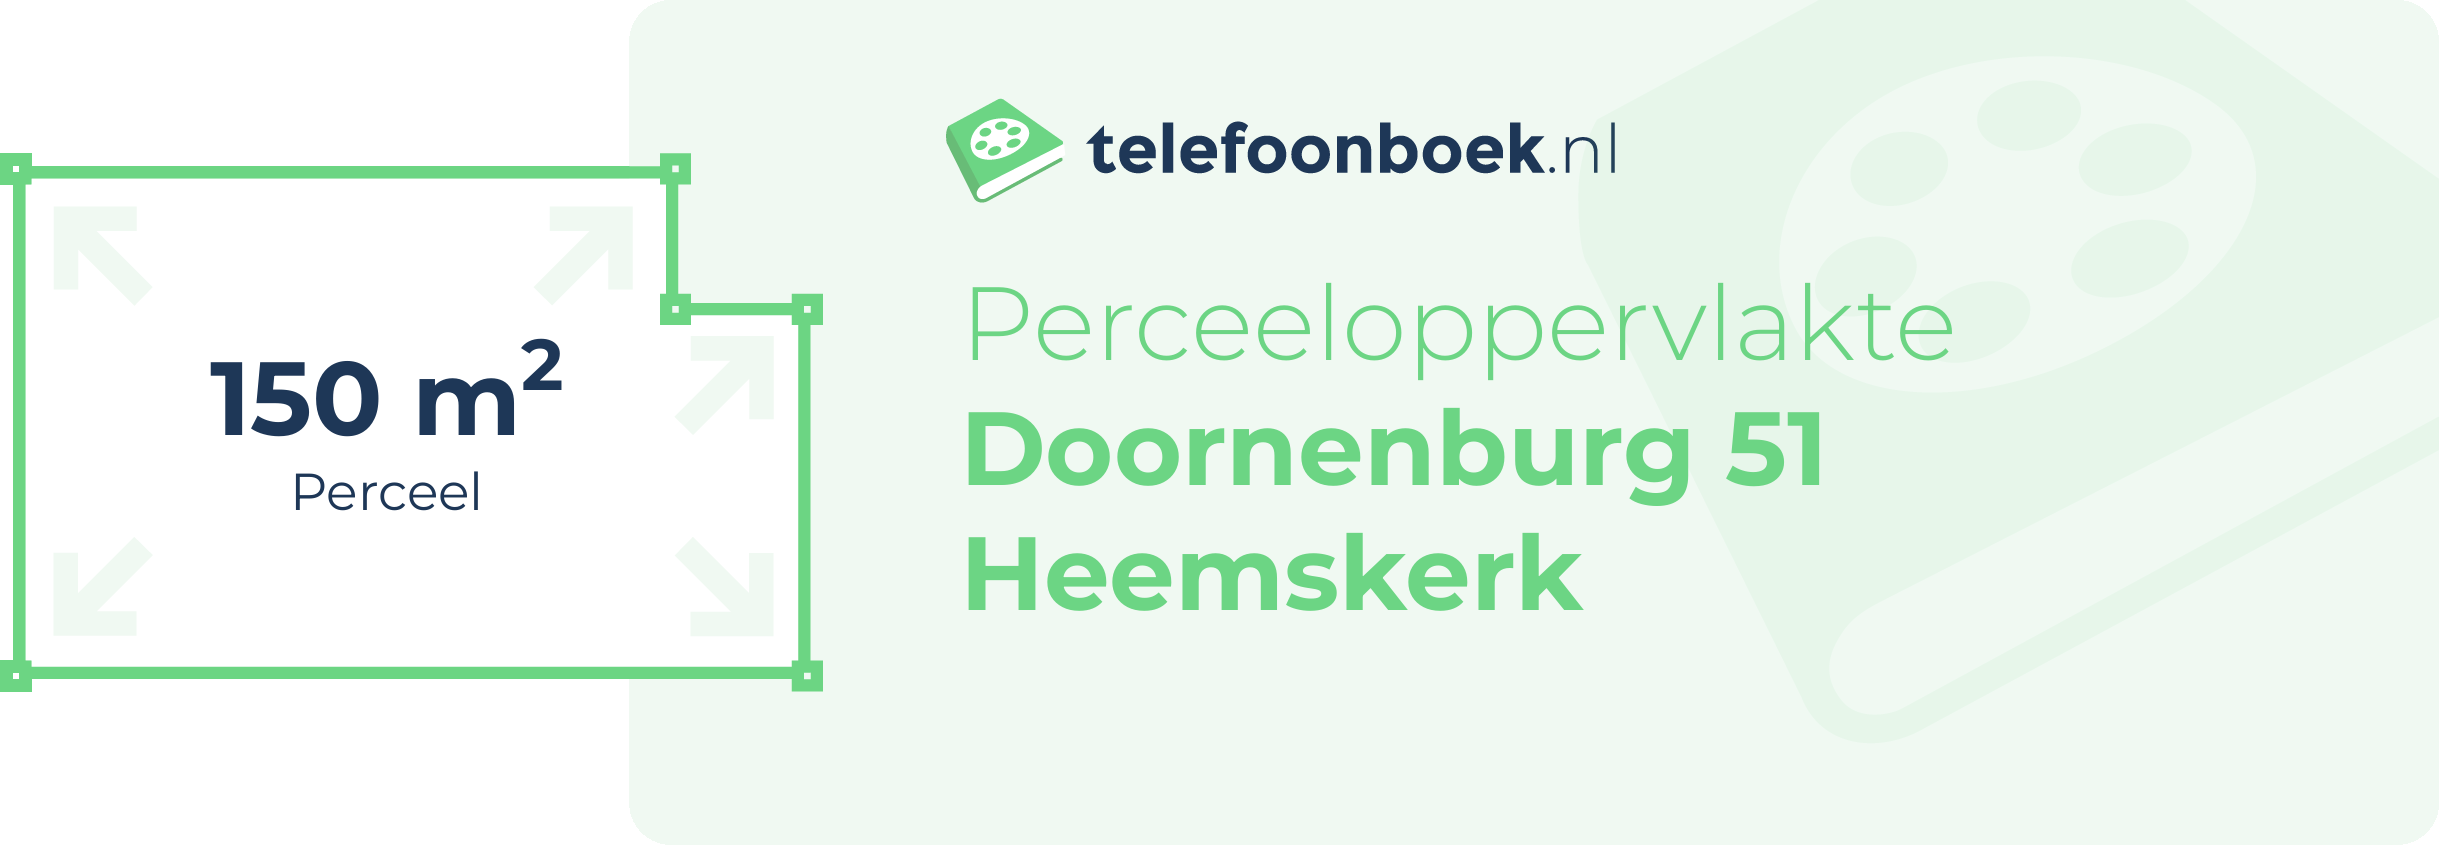 Perceeloppervlakte Doornenburg 51 Heemskerk